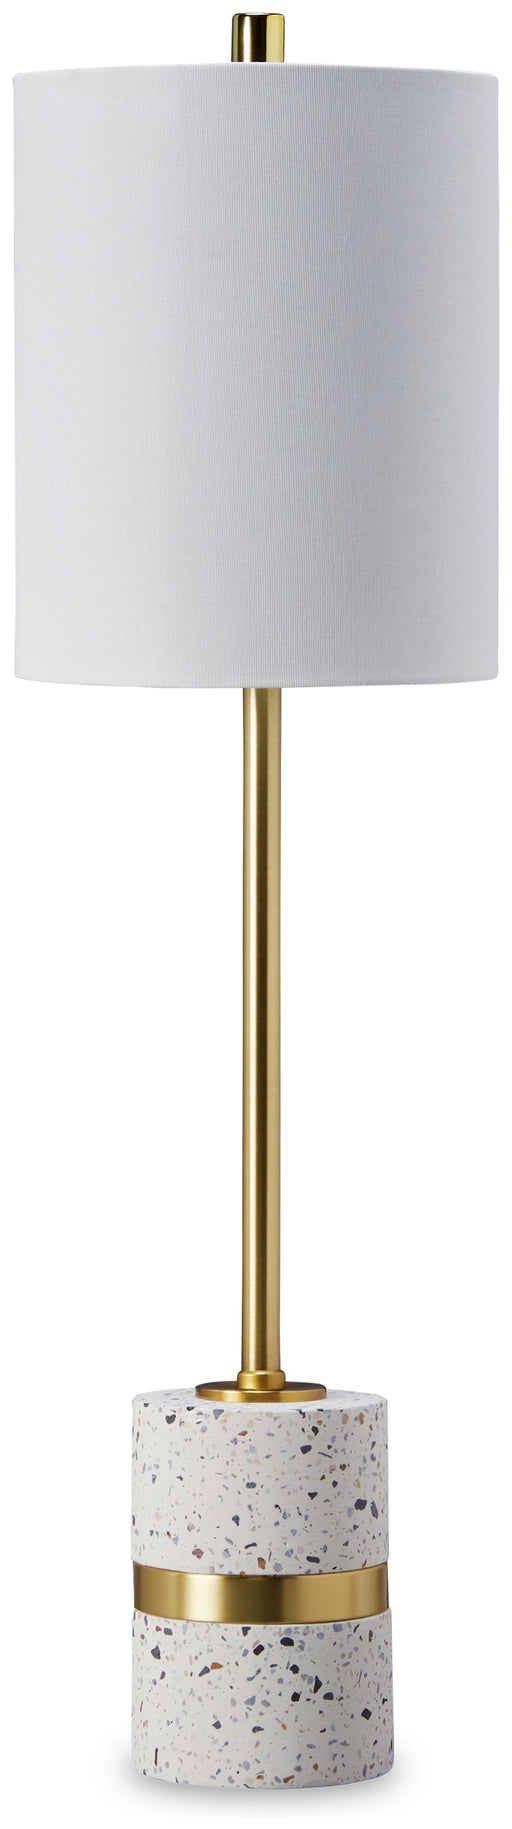 Maywick Table Lamp - L235674 - In Stock Furniture